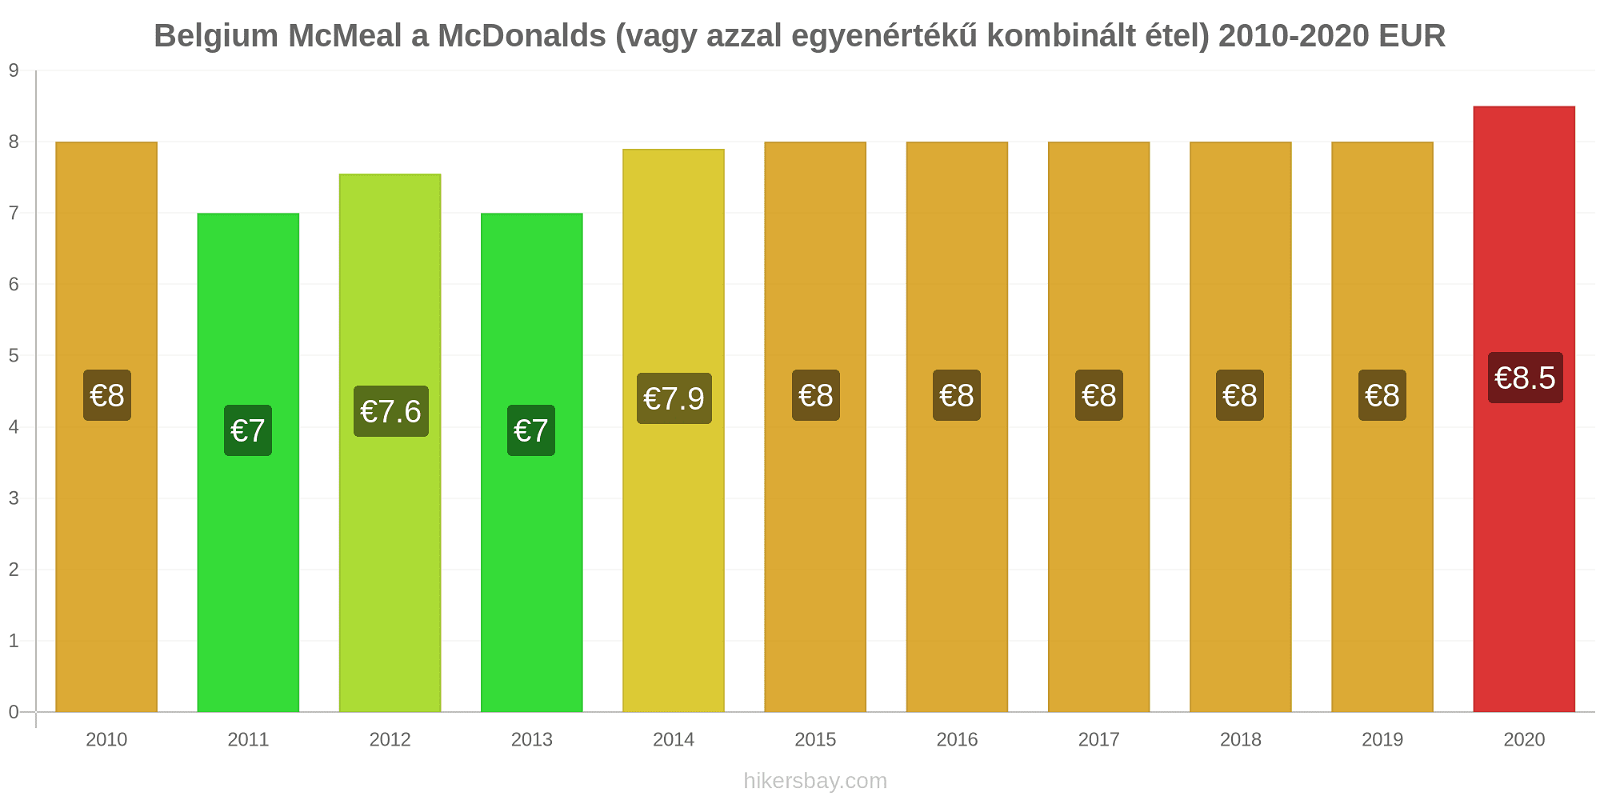 Belgium árváltozások McMeal a McDonalds (vagy azzal egyenértékű kombinált étel) hikersbay.com